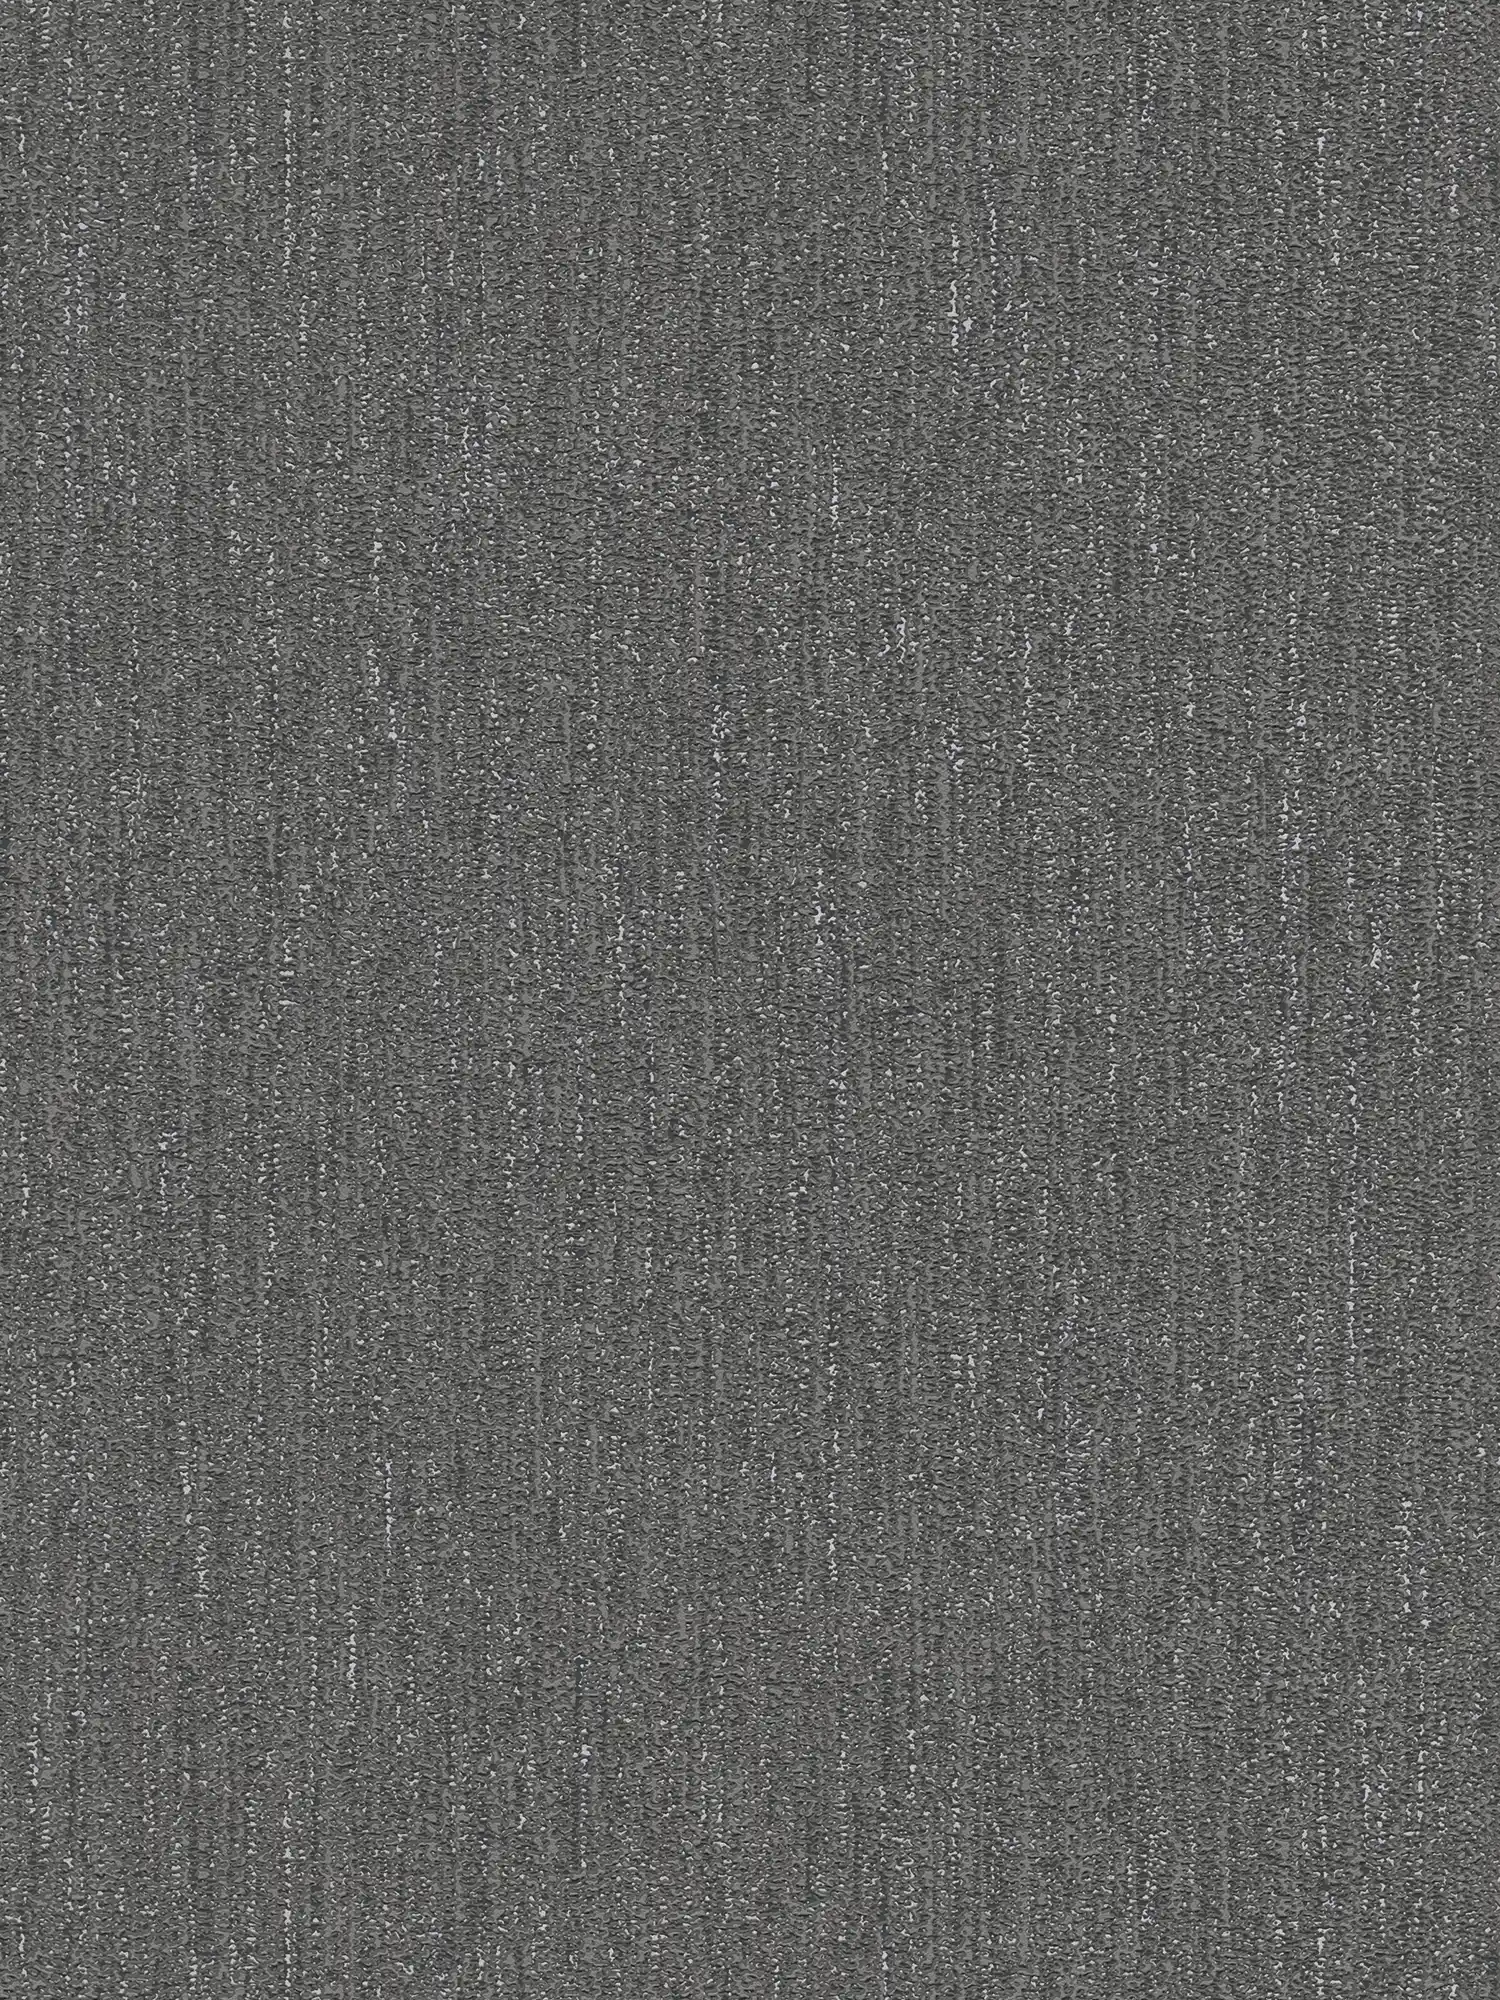 Papel pintado ligero y brillante con estructura de tela - negro, gris, plata
